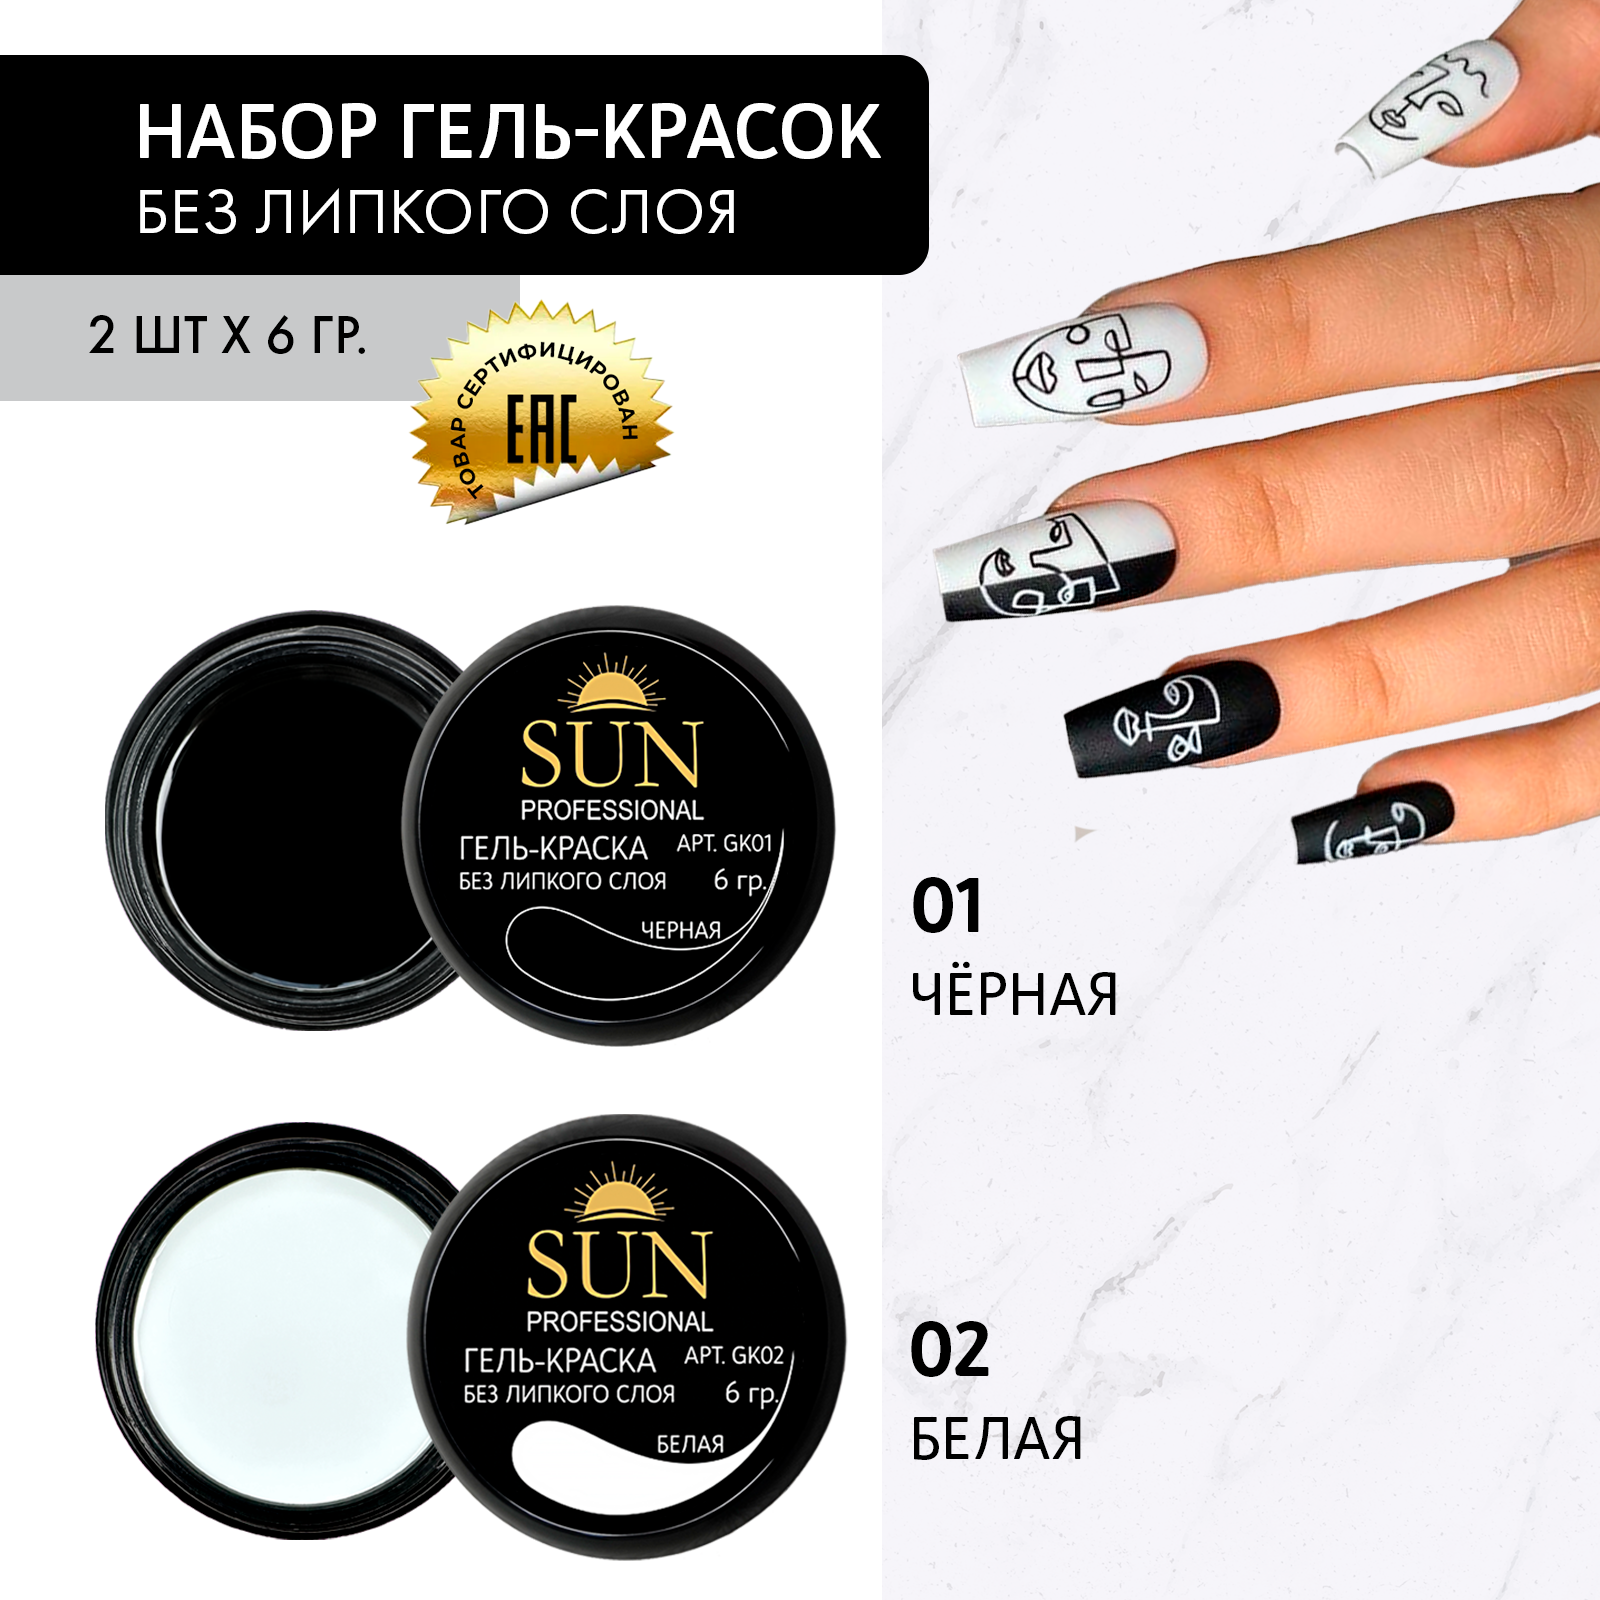 Гель-краска для ногтей SUN Professional без липкого слоя черная и белая